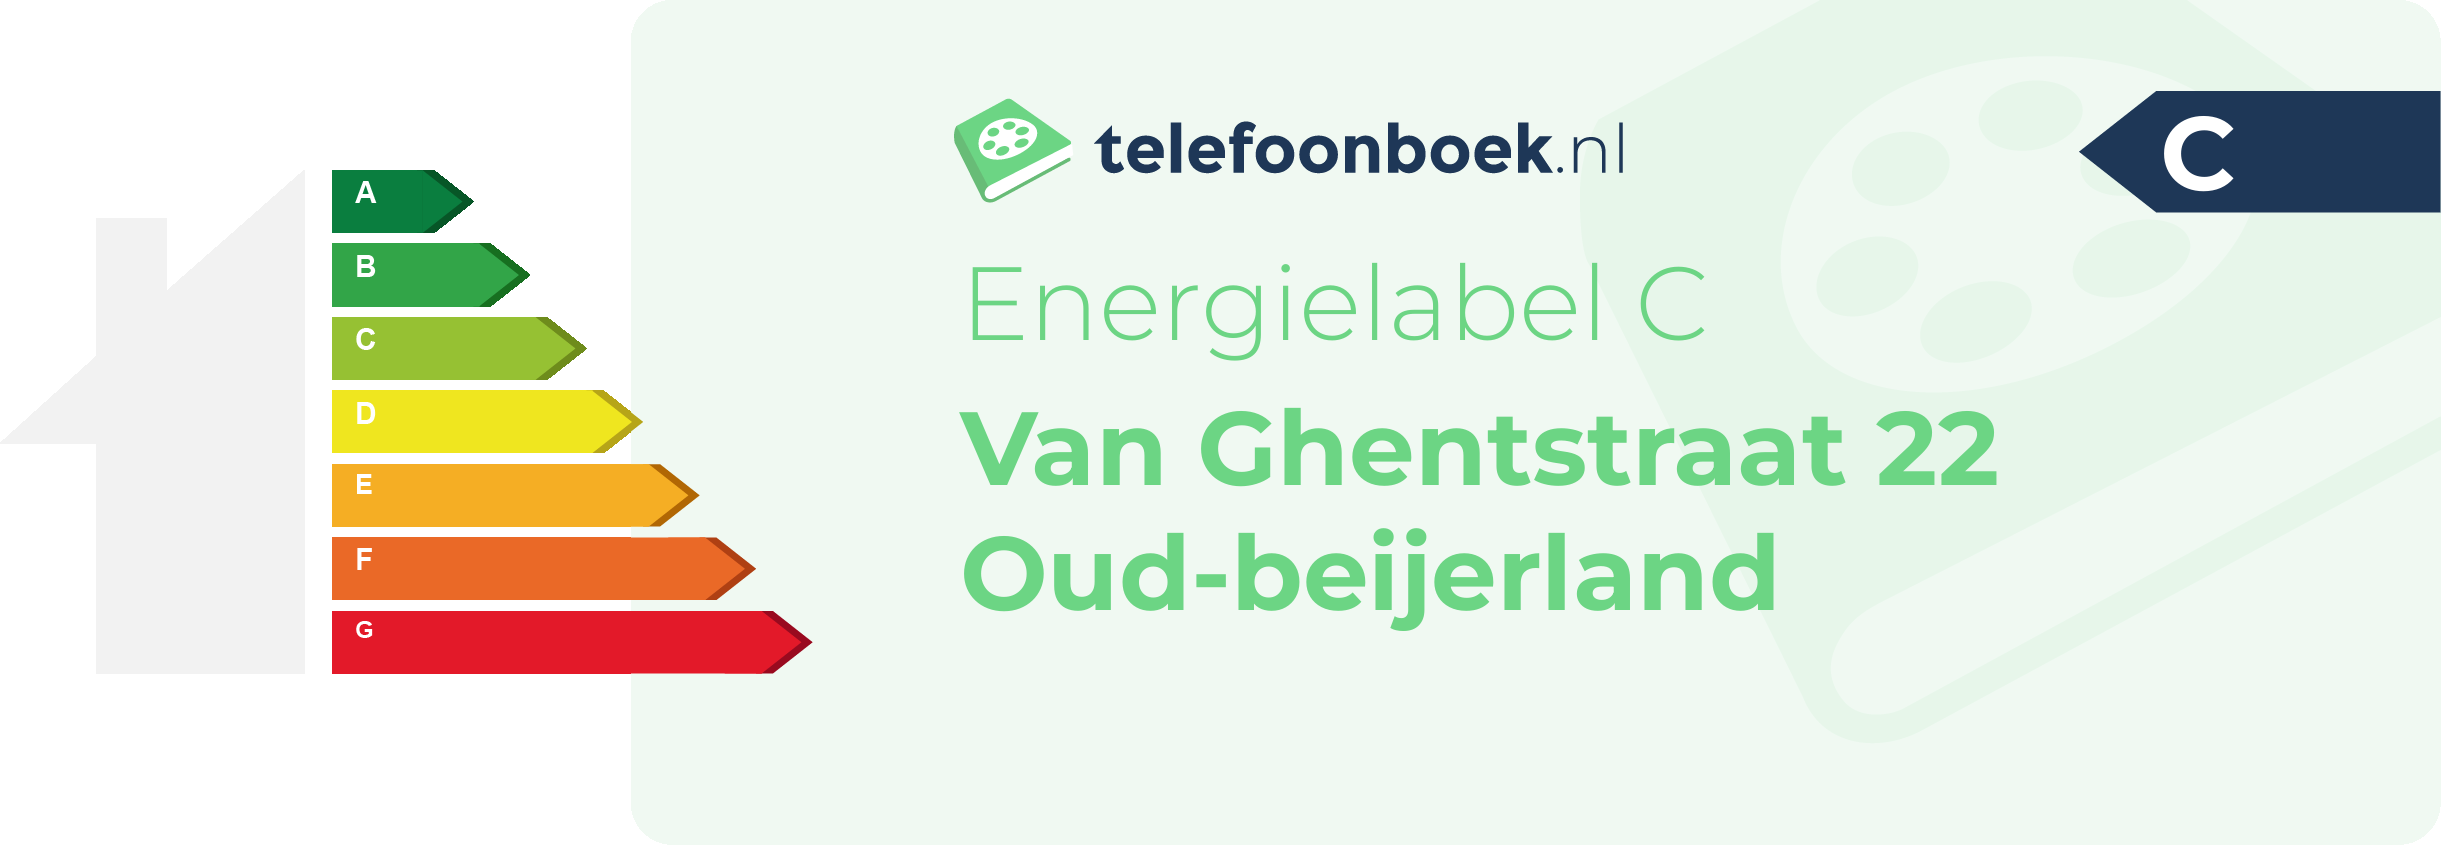 Energielabel Van Ghentstraat 22 Oud-Beijerland